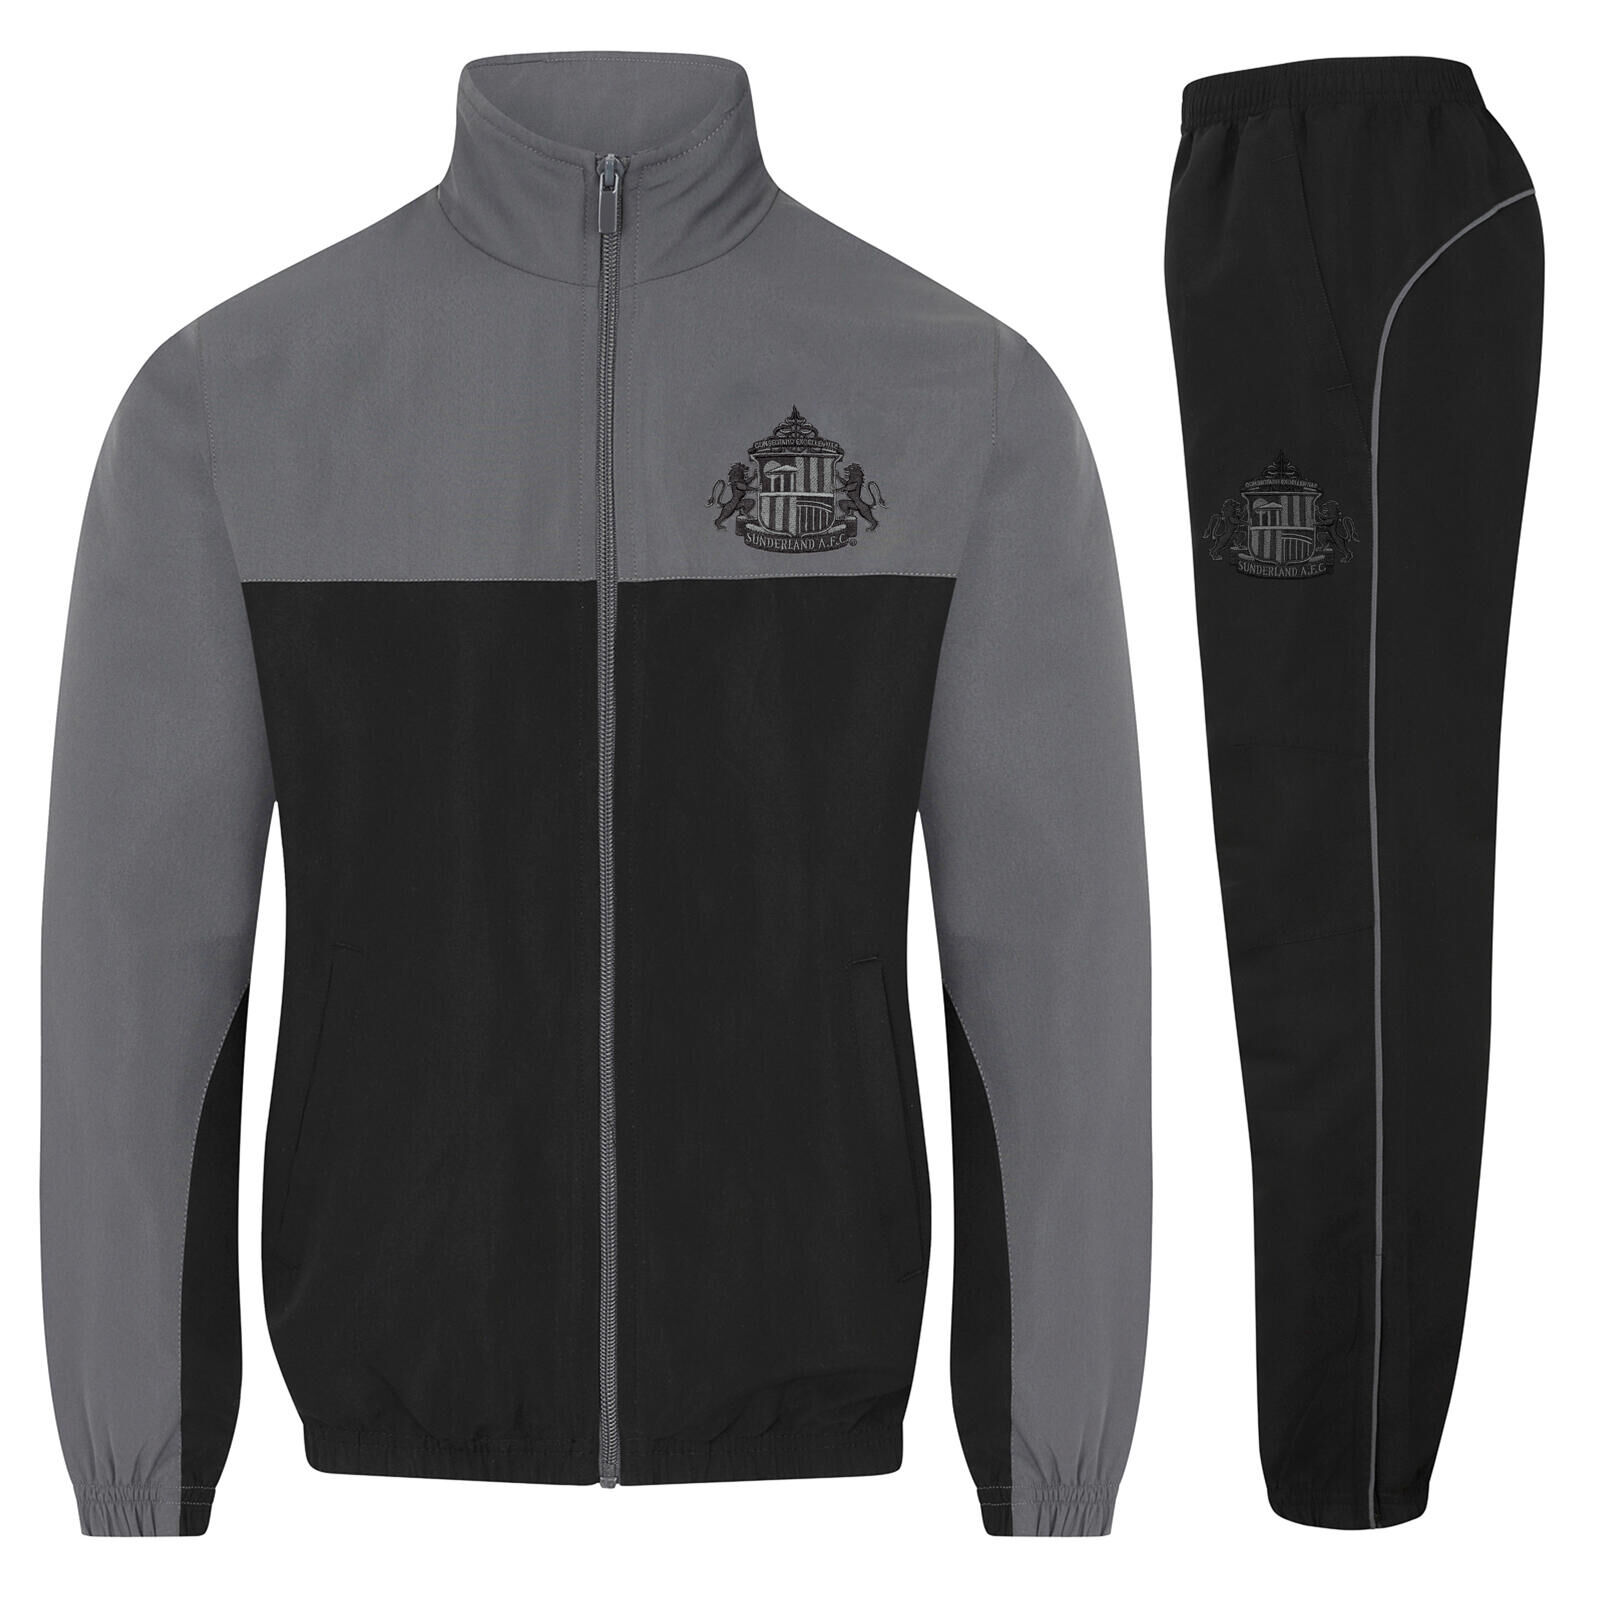 SUNDERLAND AFC Sunderland AFC Boys Tracksuit Jacket & Pants Set Kids OFFICIAL Football Gift